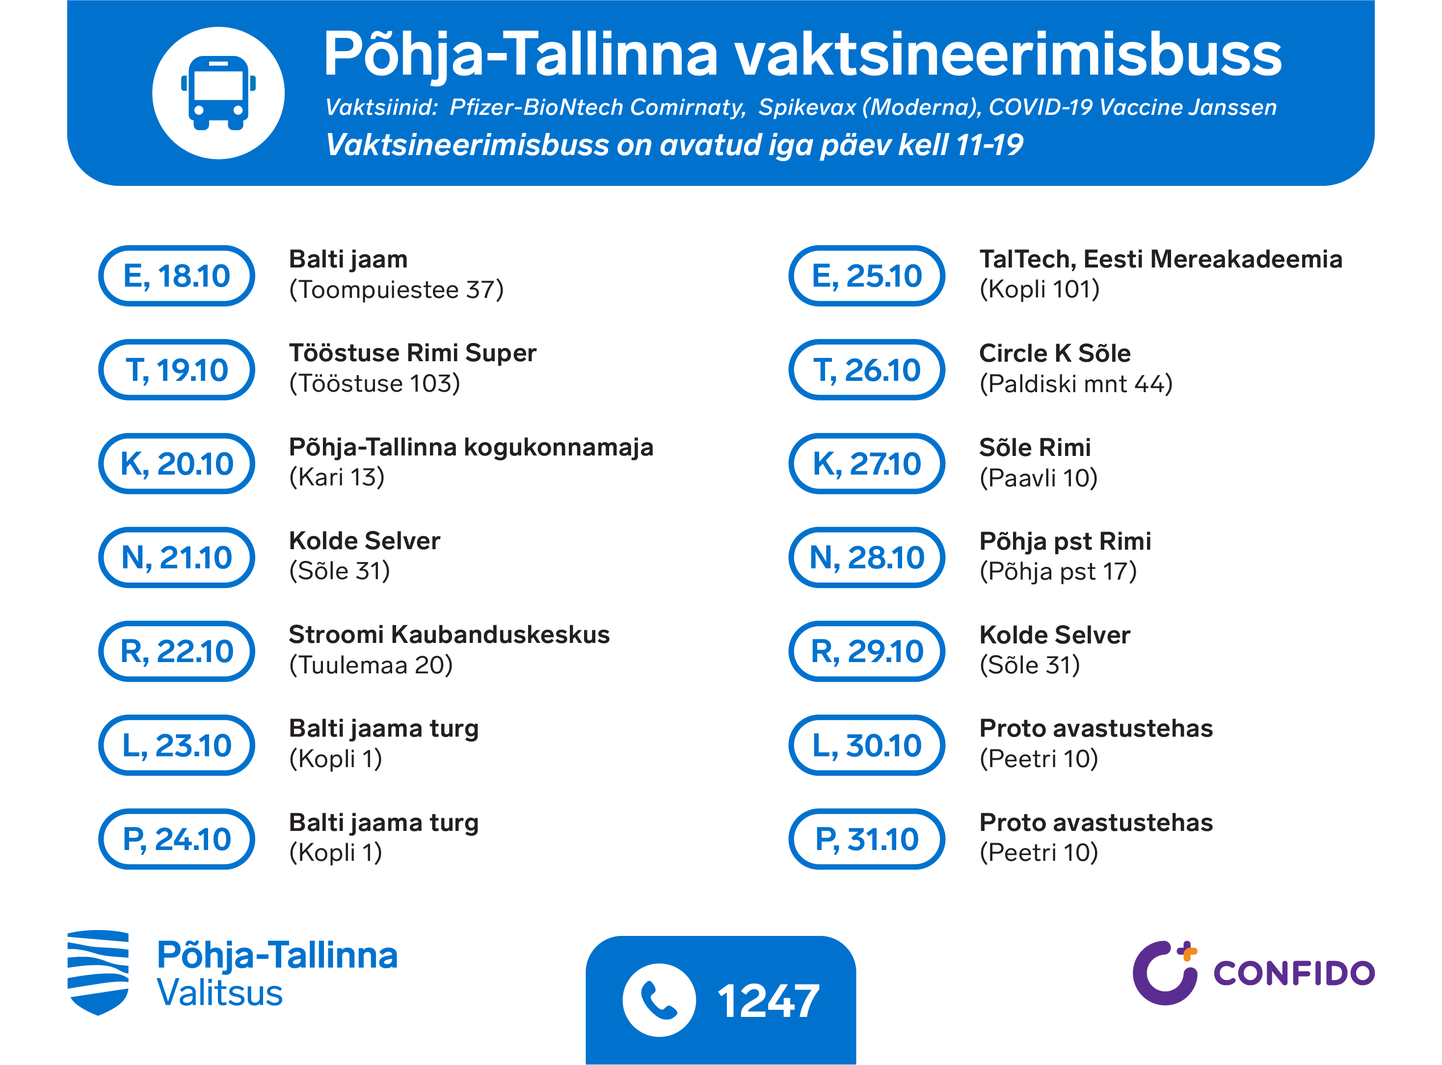 График вакцинационного автобуса, который будет курсировать по Пыхья-Таллинну.